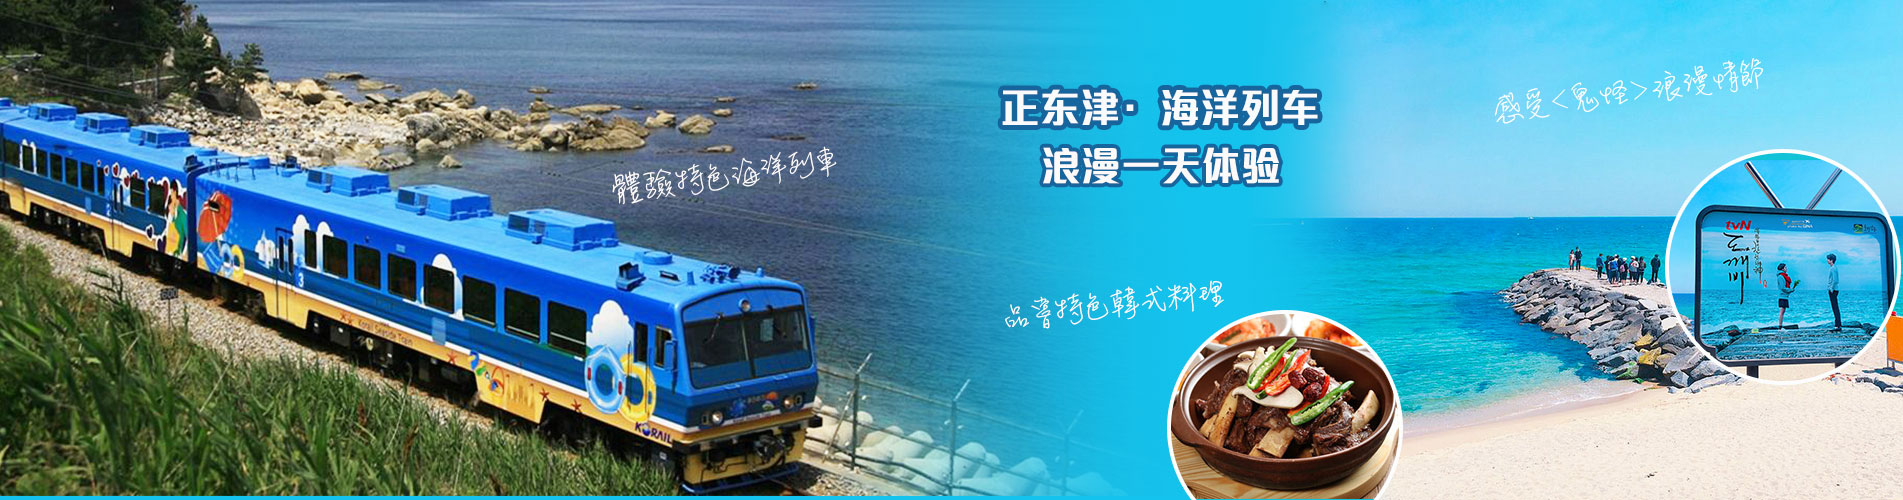 【首爾出發】正東津·海洋列車 X 注文津海邊 X 江陵咖啡街